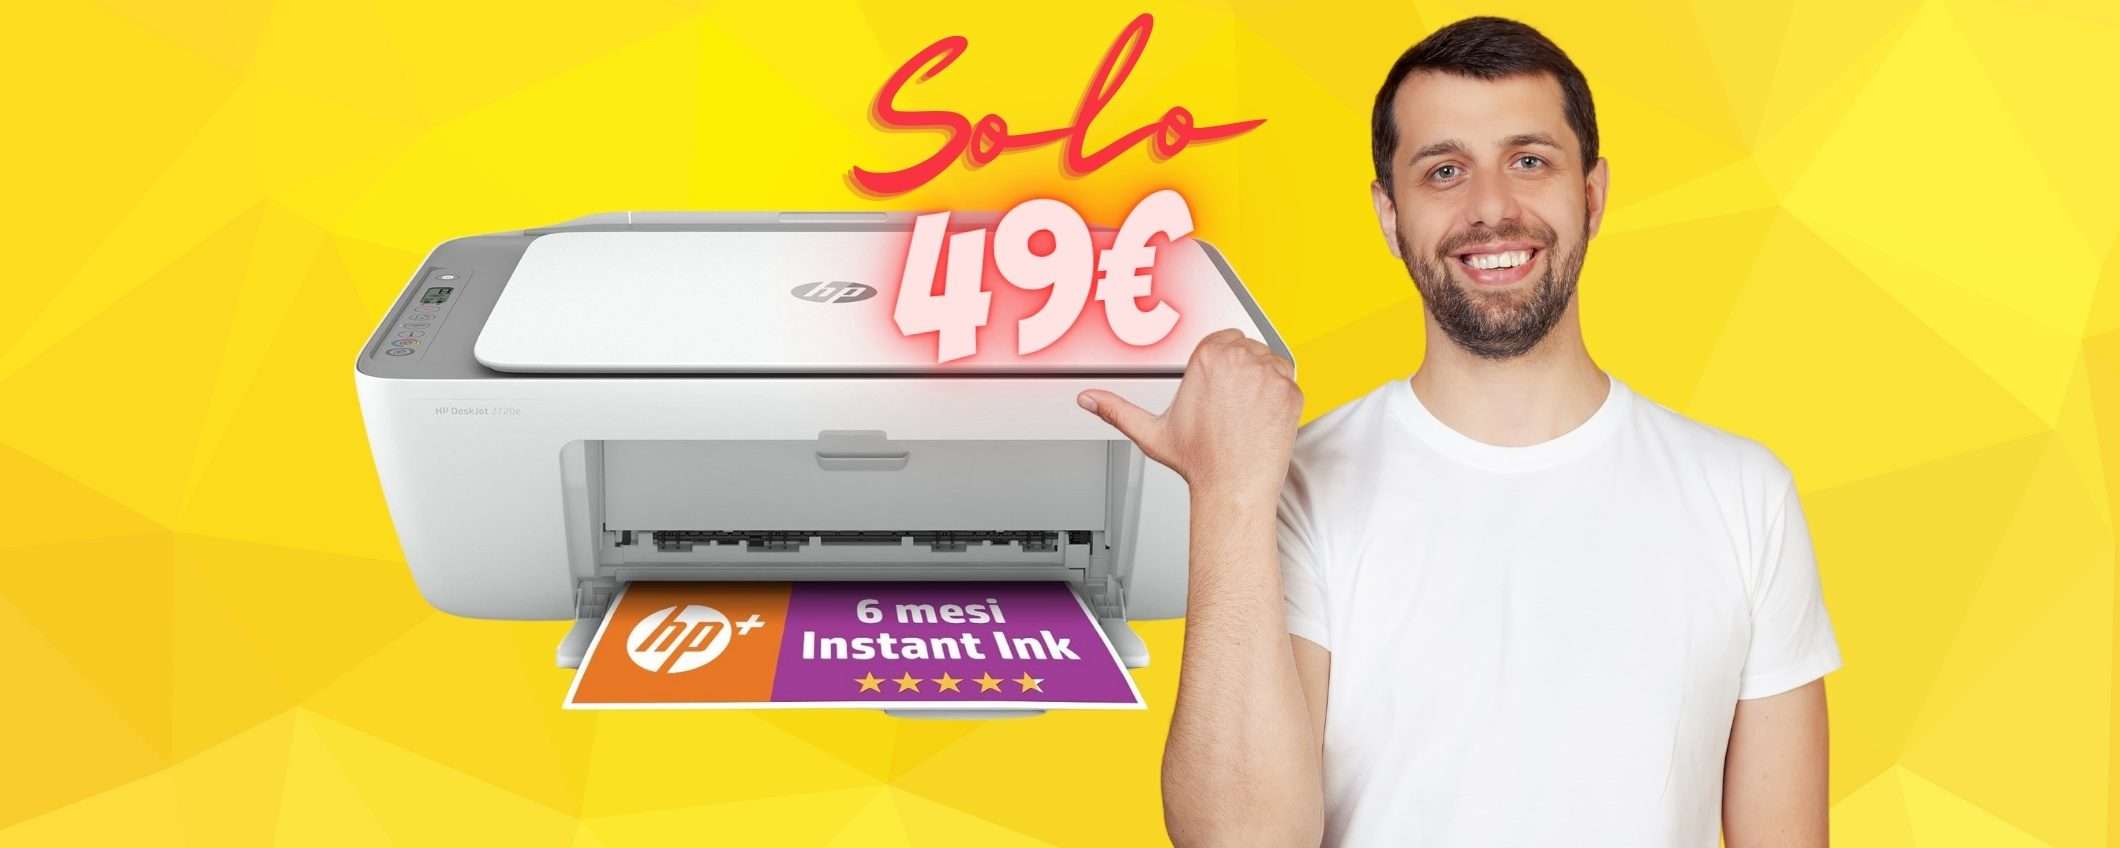 HP DeskJet 2720e: la stampante multifunzione compatta tua a SOLI 49€